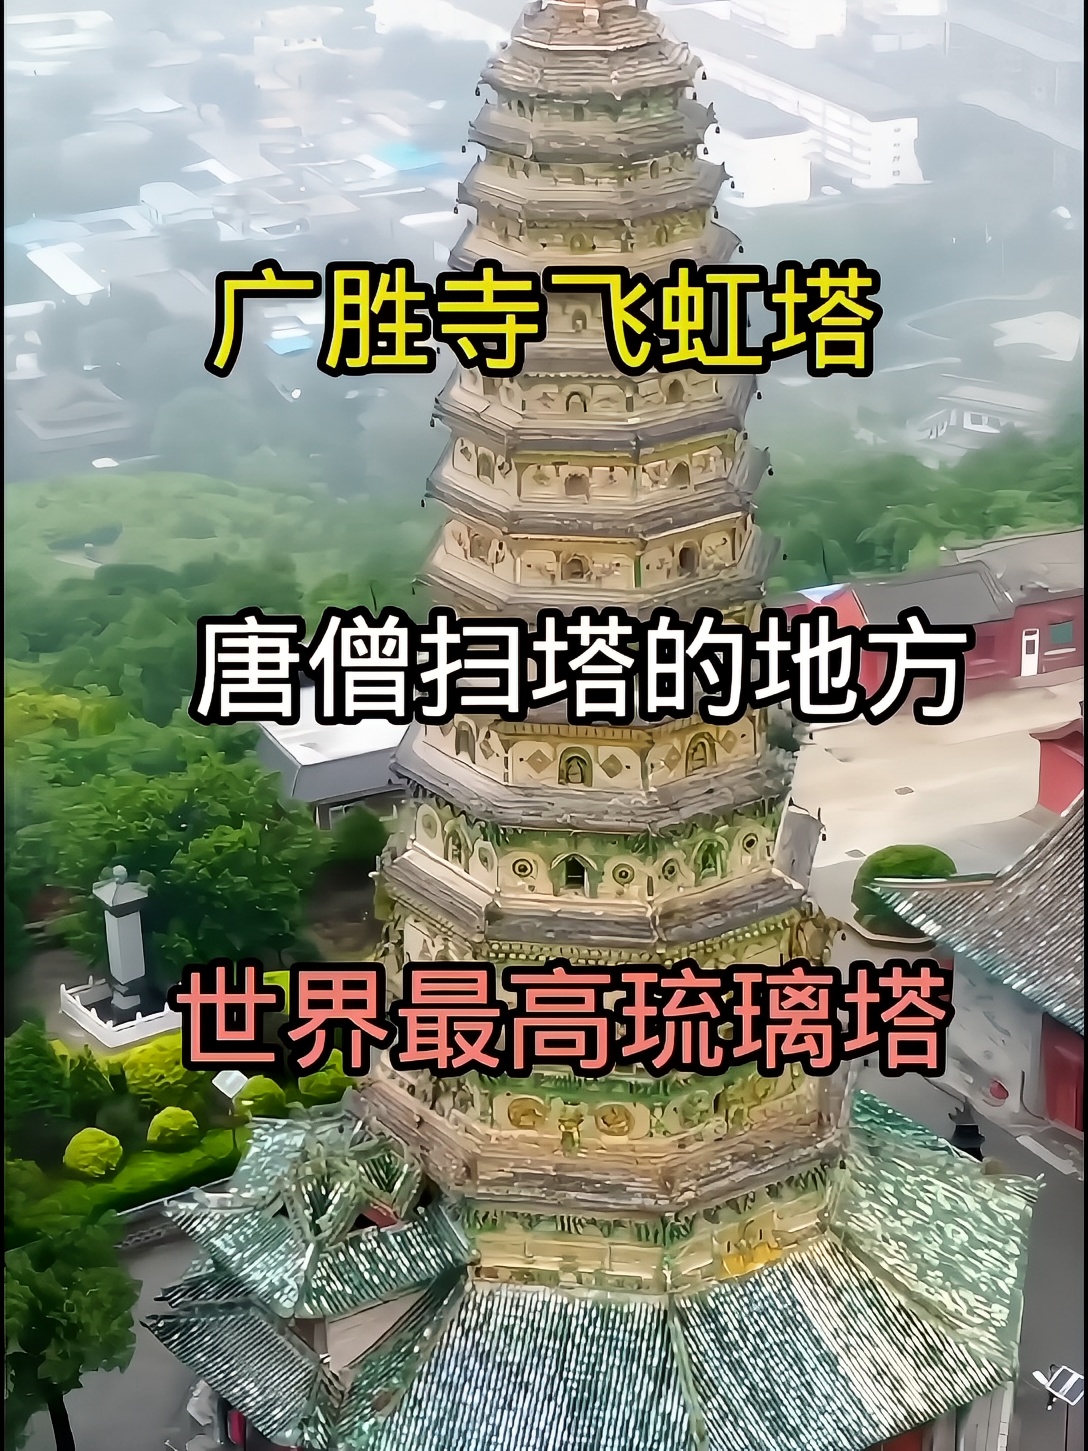 唐僧扫塔的地方 世界最高多彩琉璃塔 广胜寺飞虹塔